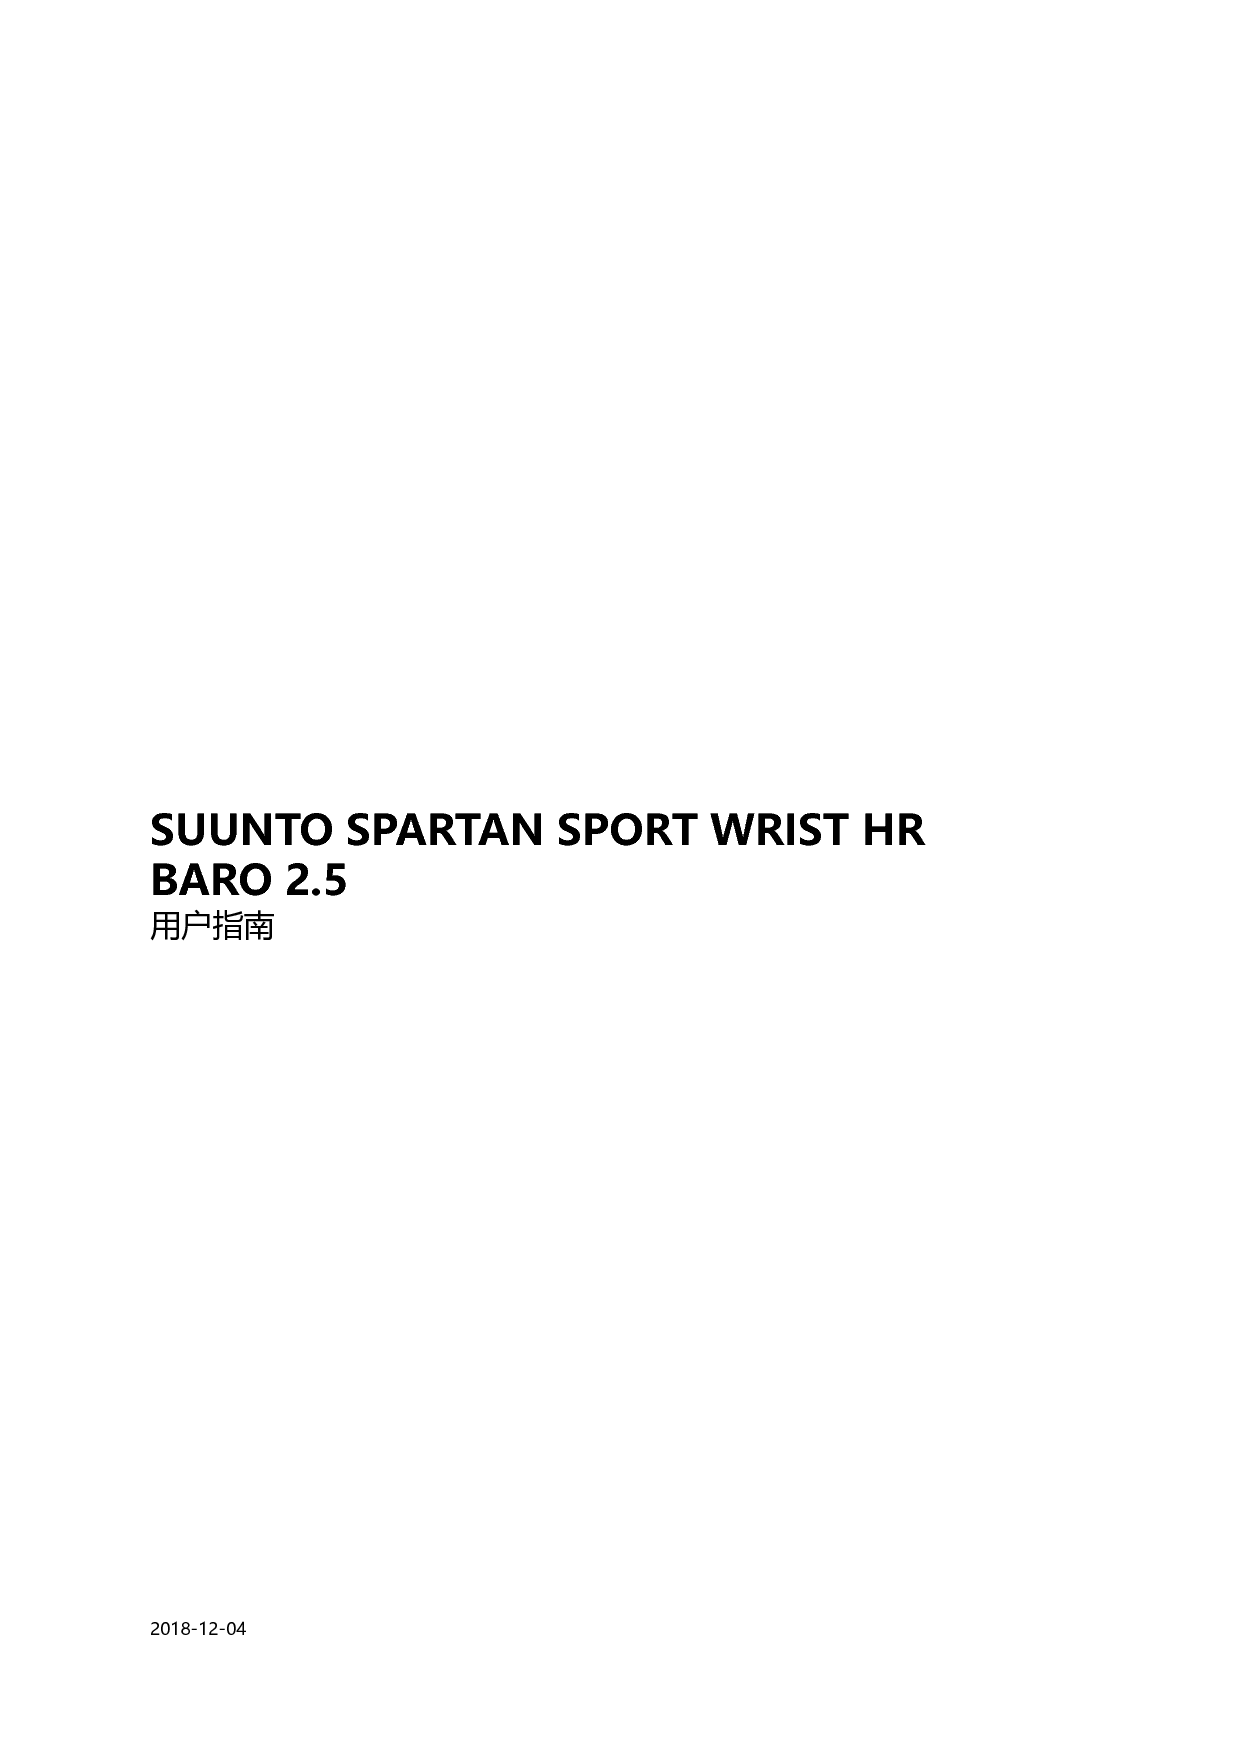 松拓 Suunto SPARTAN SPORT WRIST HR BARO 2.5 用户指南 封面